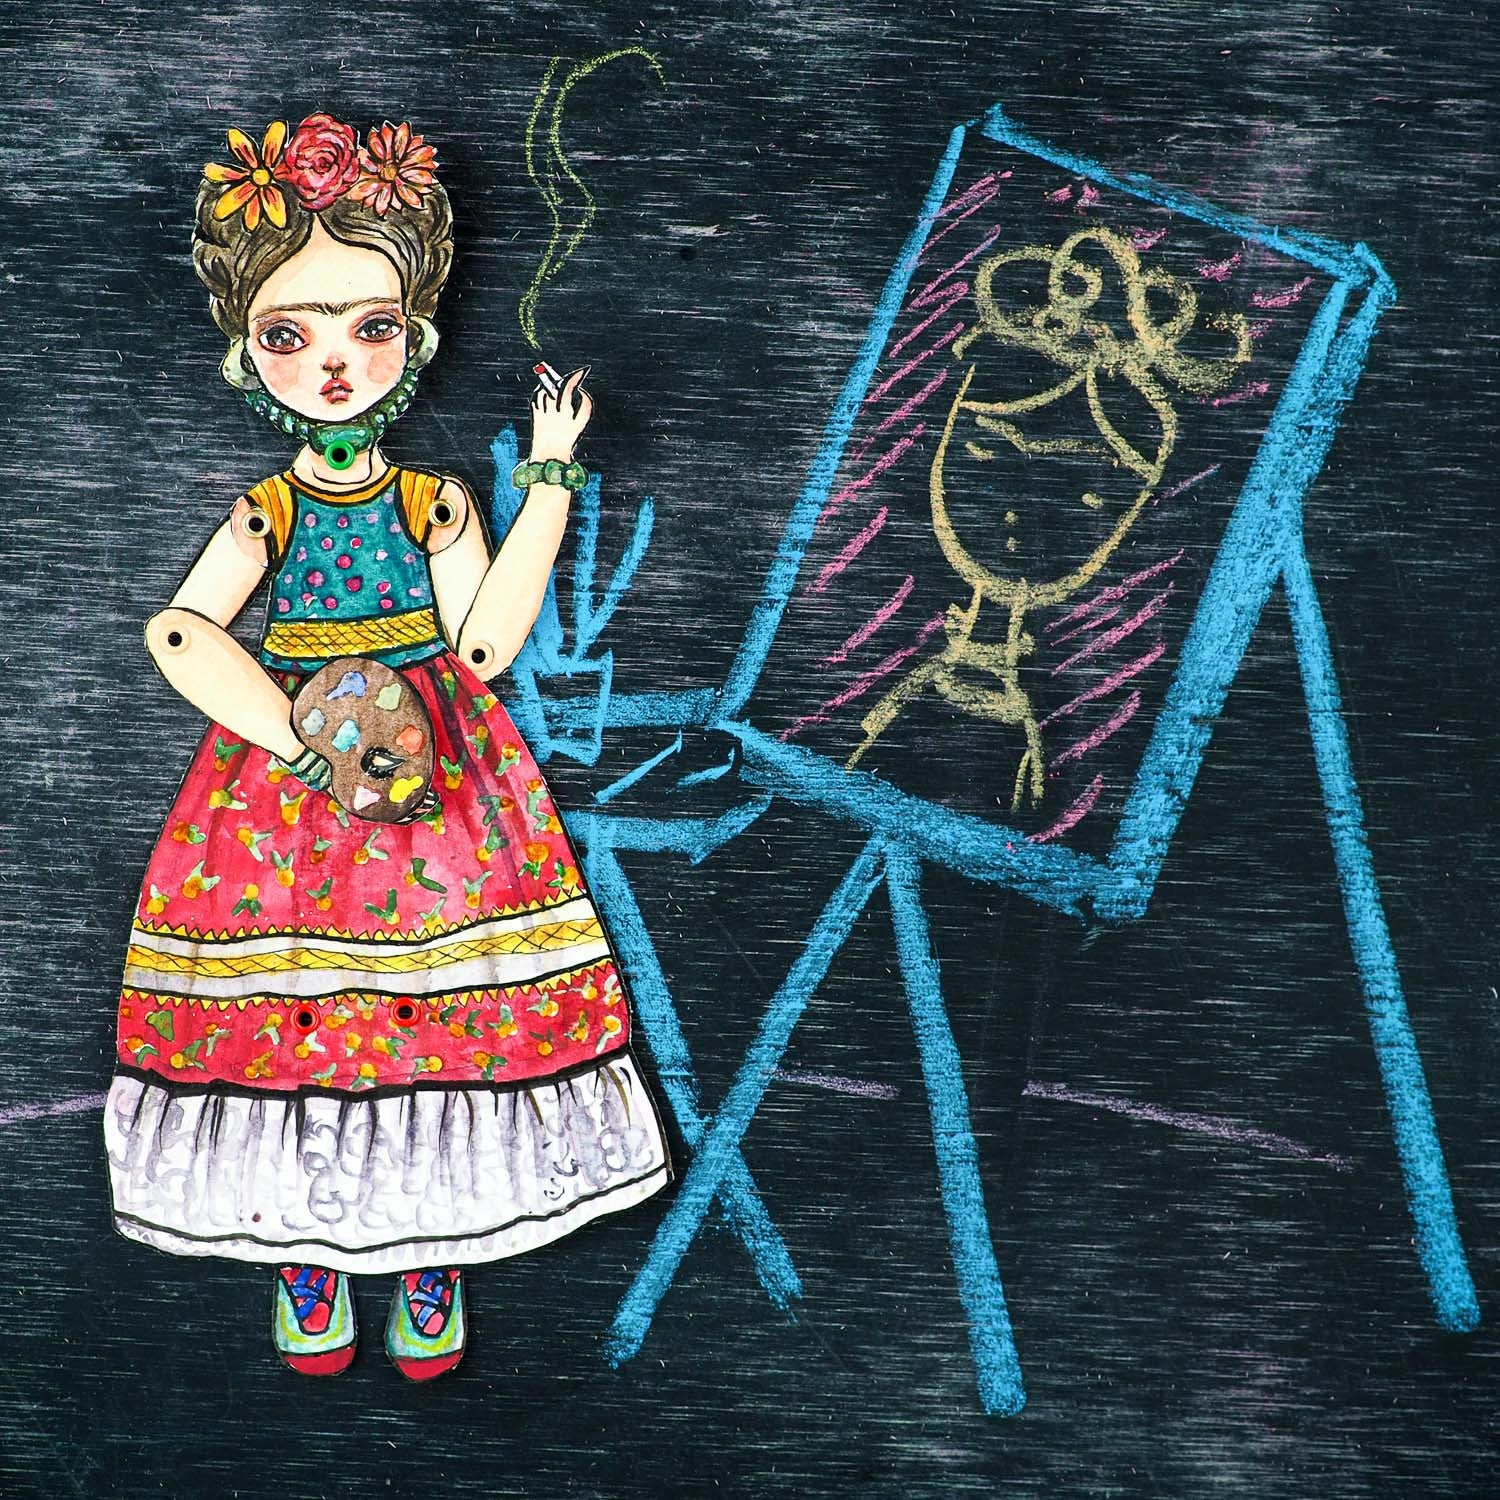 Frida watercolor original art doll by Danita, Art Doll by Danita Art